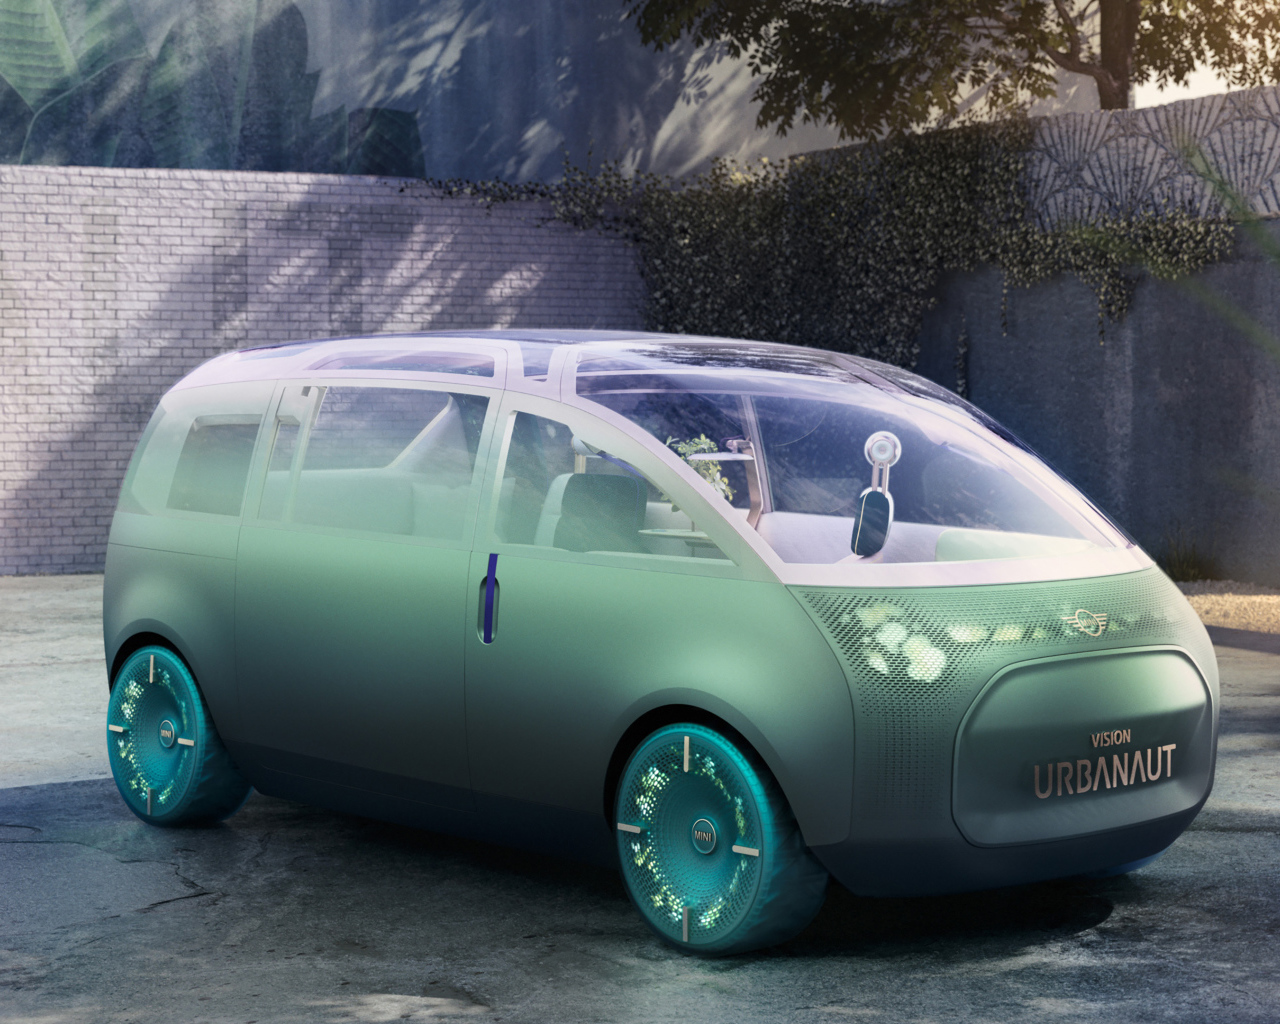 2020 MINI Vision Urbanaut futuristic car